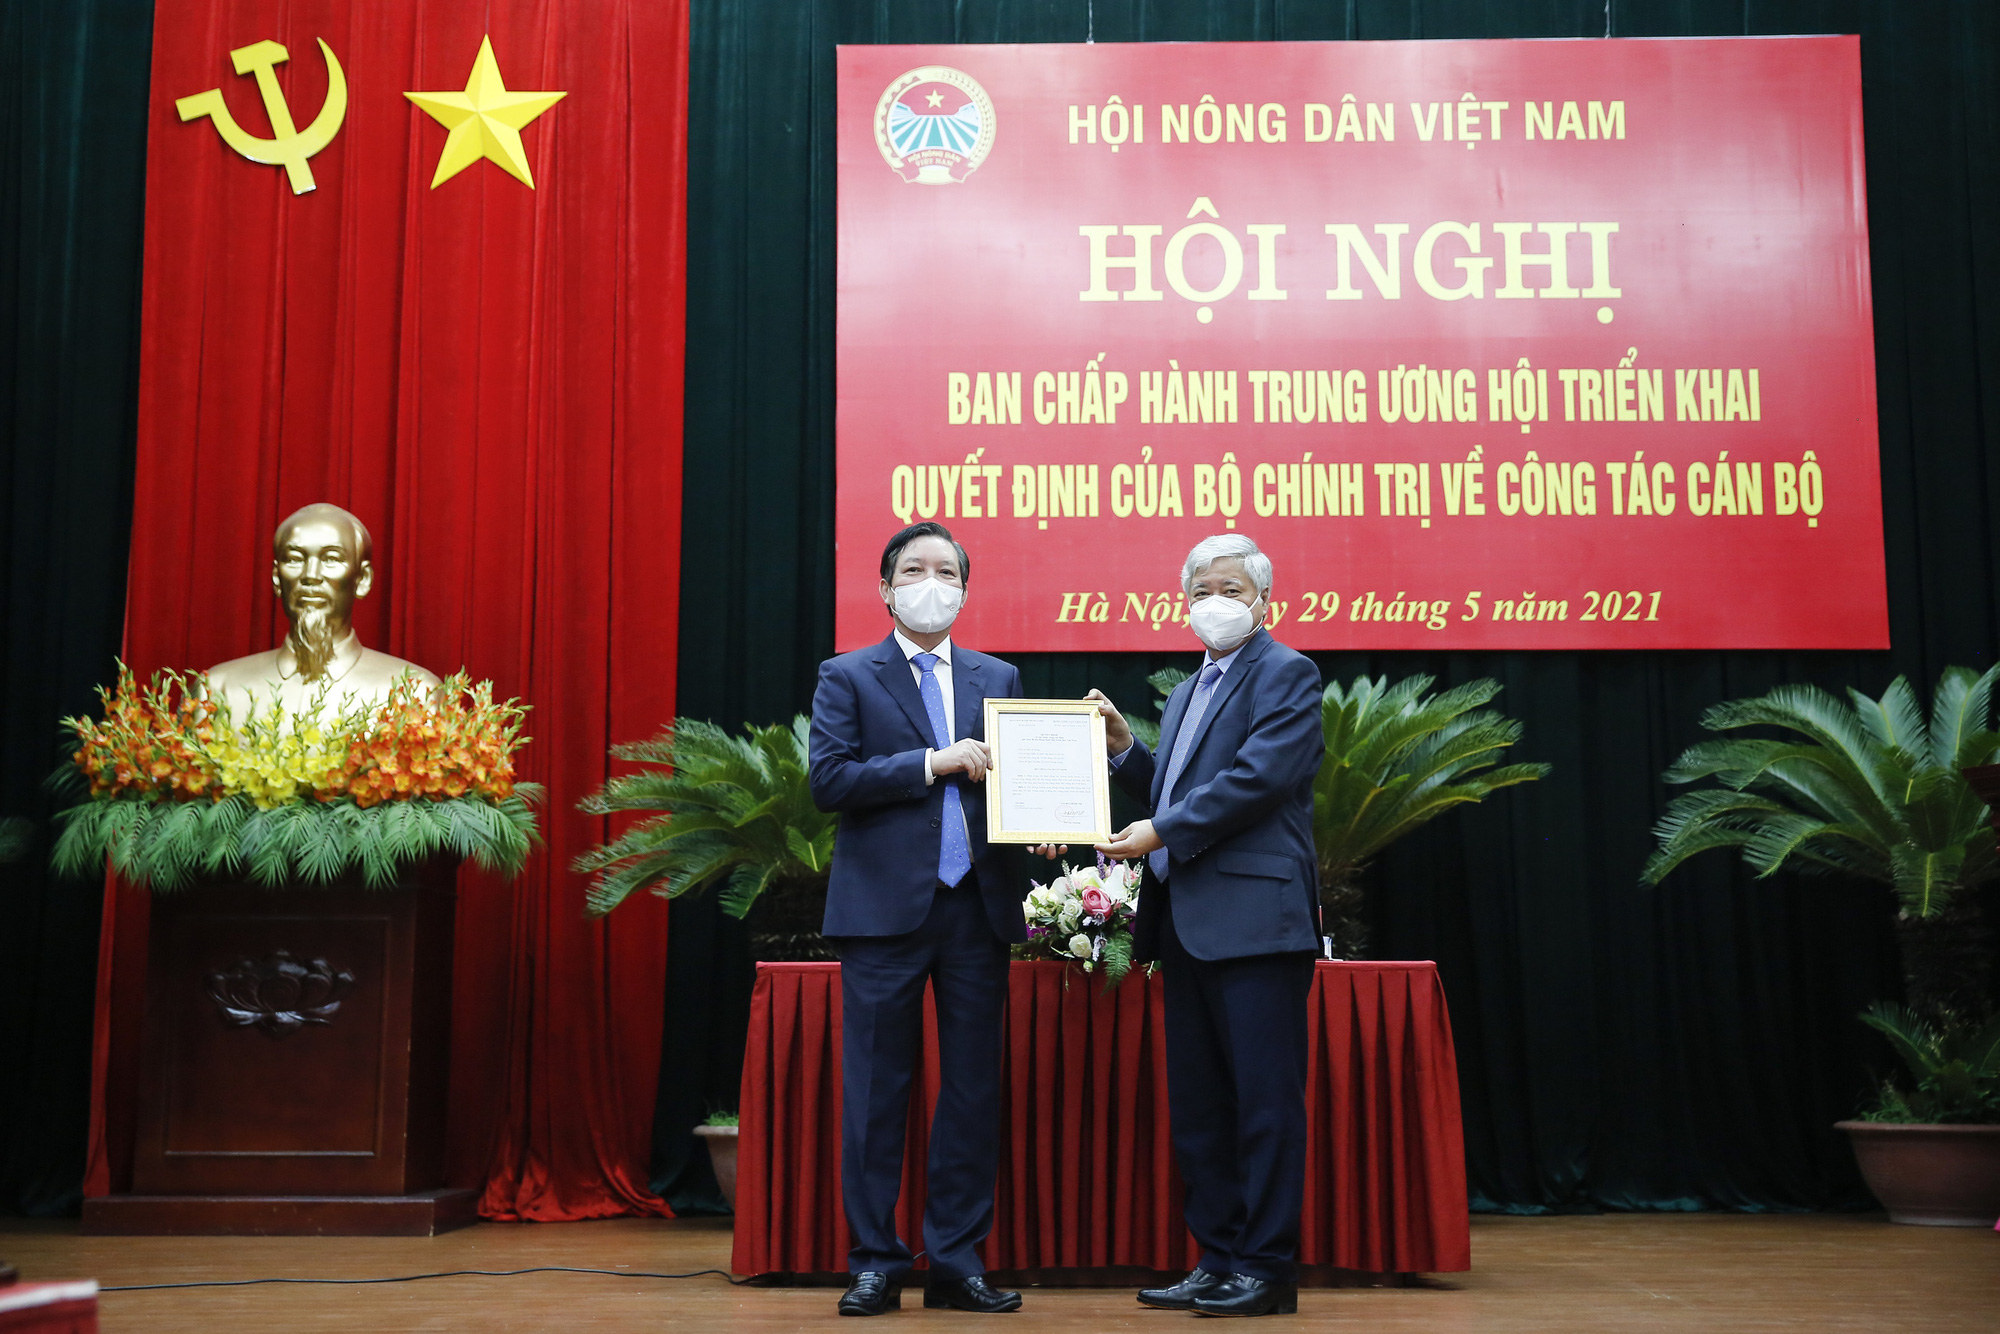 Chào đón năm mới 2022 cùng điểm lại 15 dấu ấn nổi bật của Hội Nông dân Việt Nam năm 2021 - Ảnh 7.